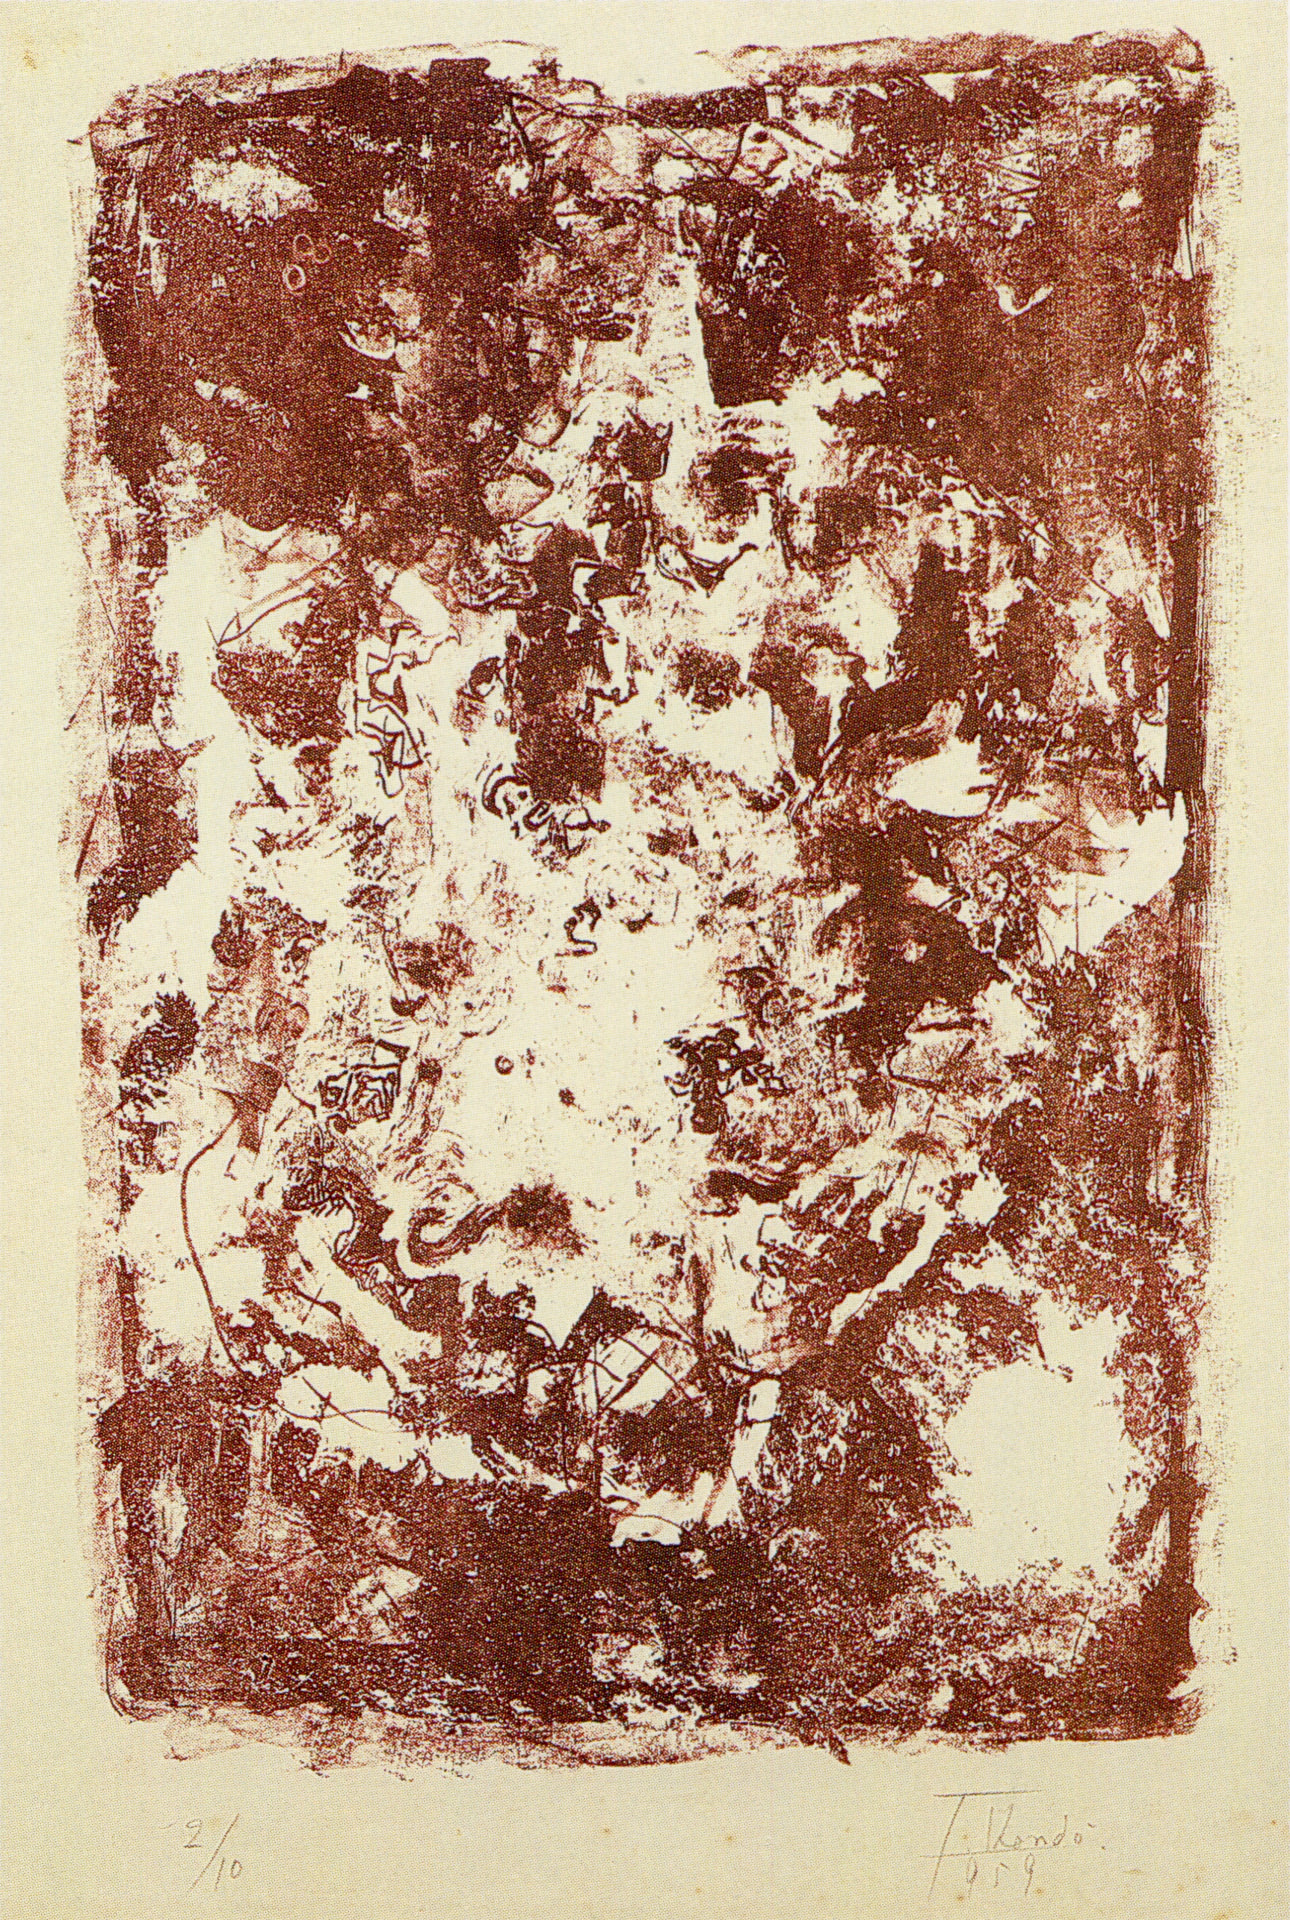 近藤竜男〈せめぎ〉, リトグラフ・紙, 54.0×35.5, 1959